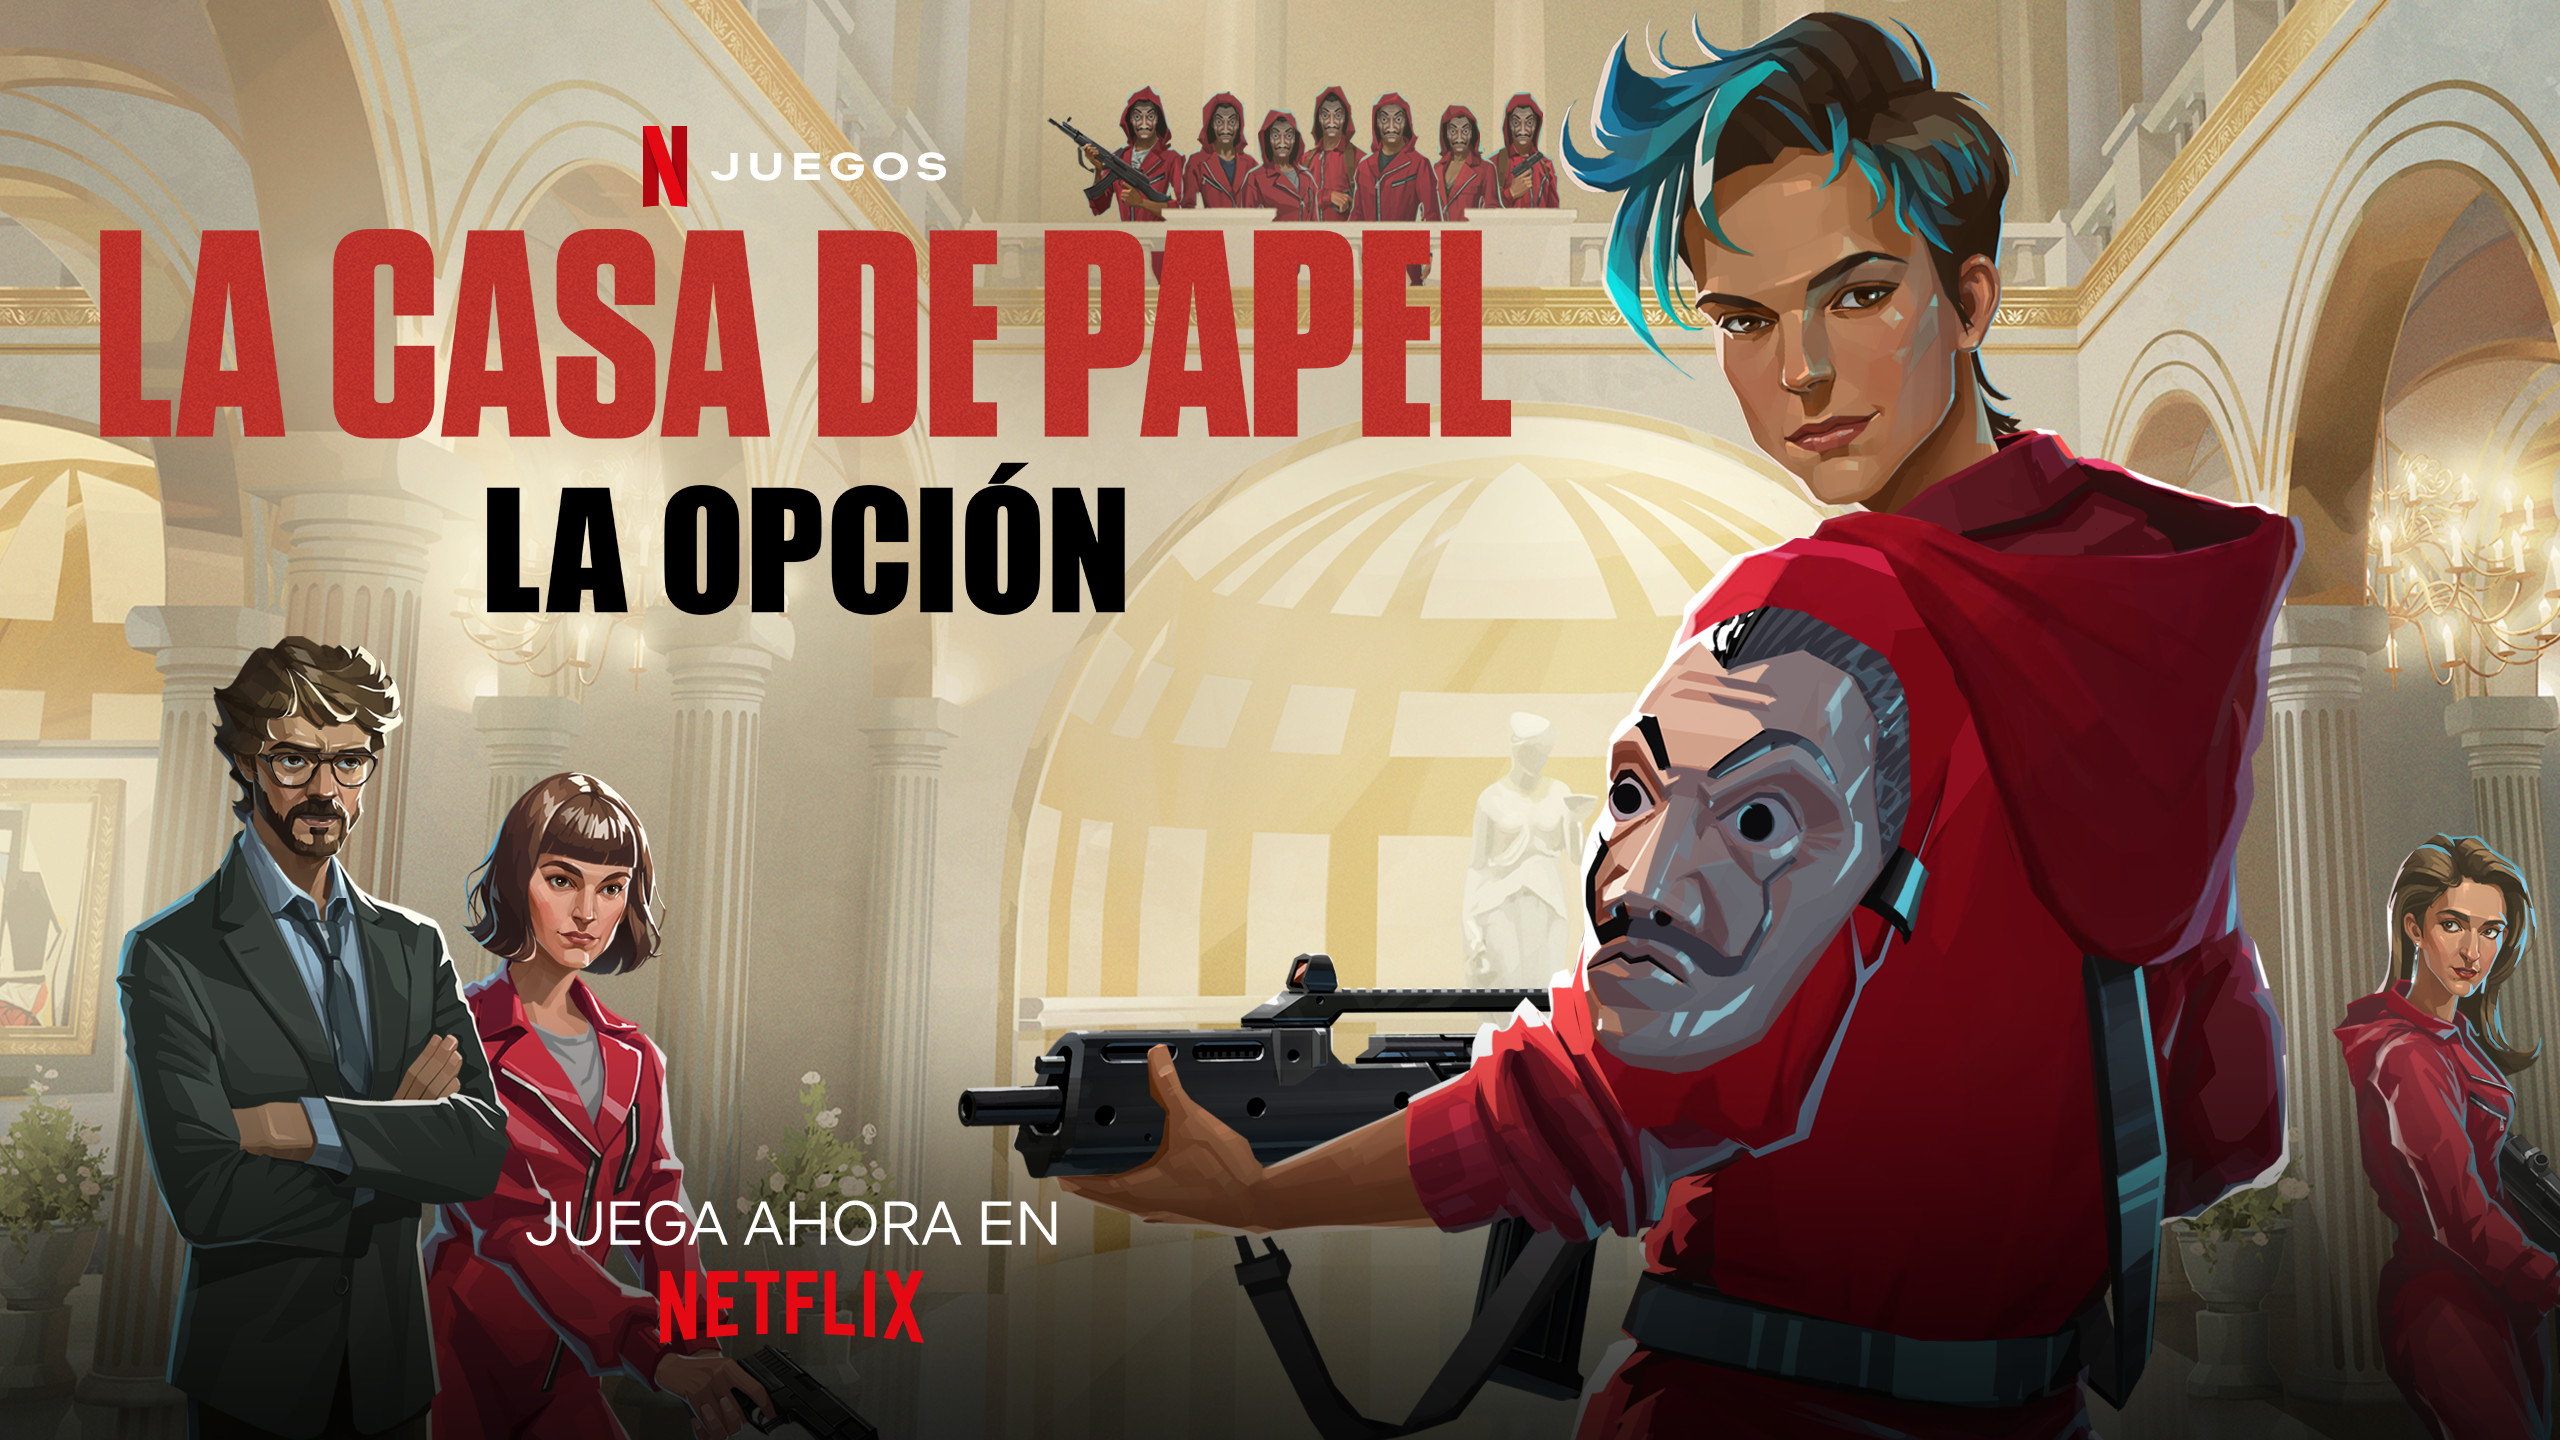 Disponible en Netflix un videojuego inspirado en 'La casa de papel' donde sale Barcelona, pero no en catalán